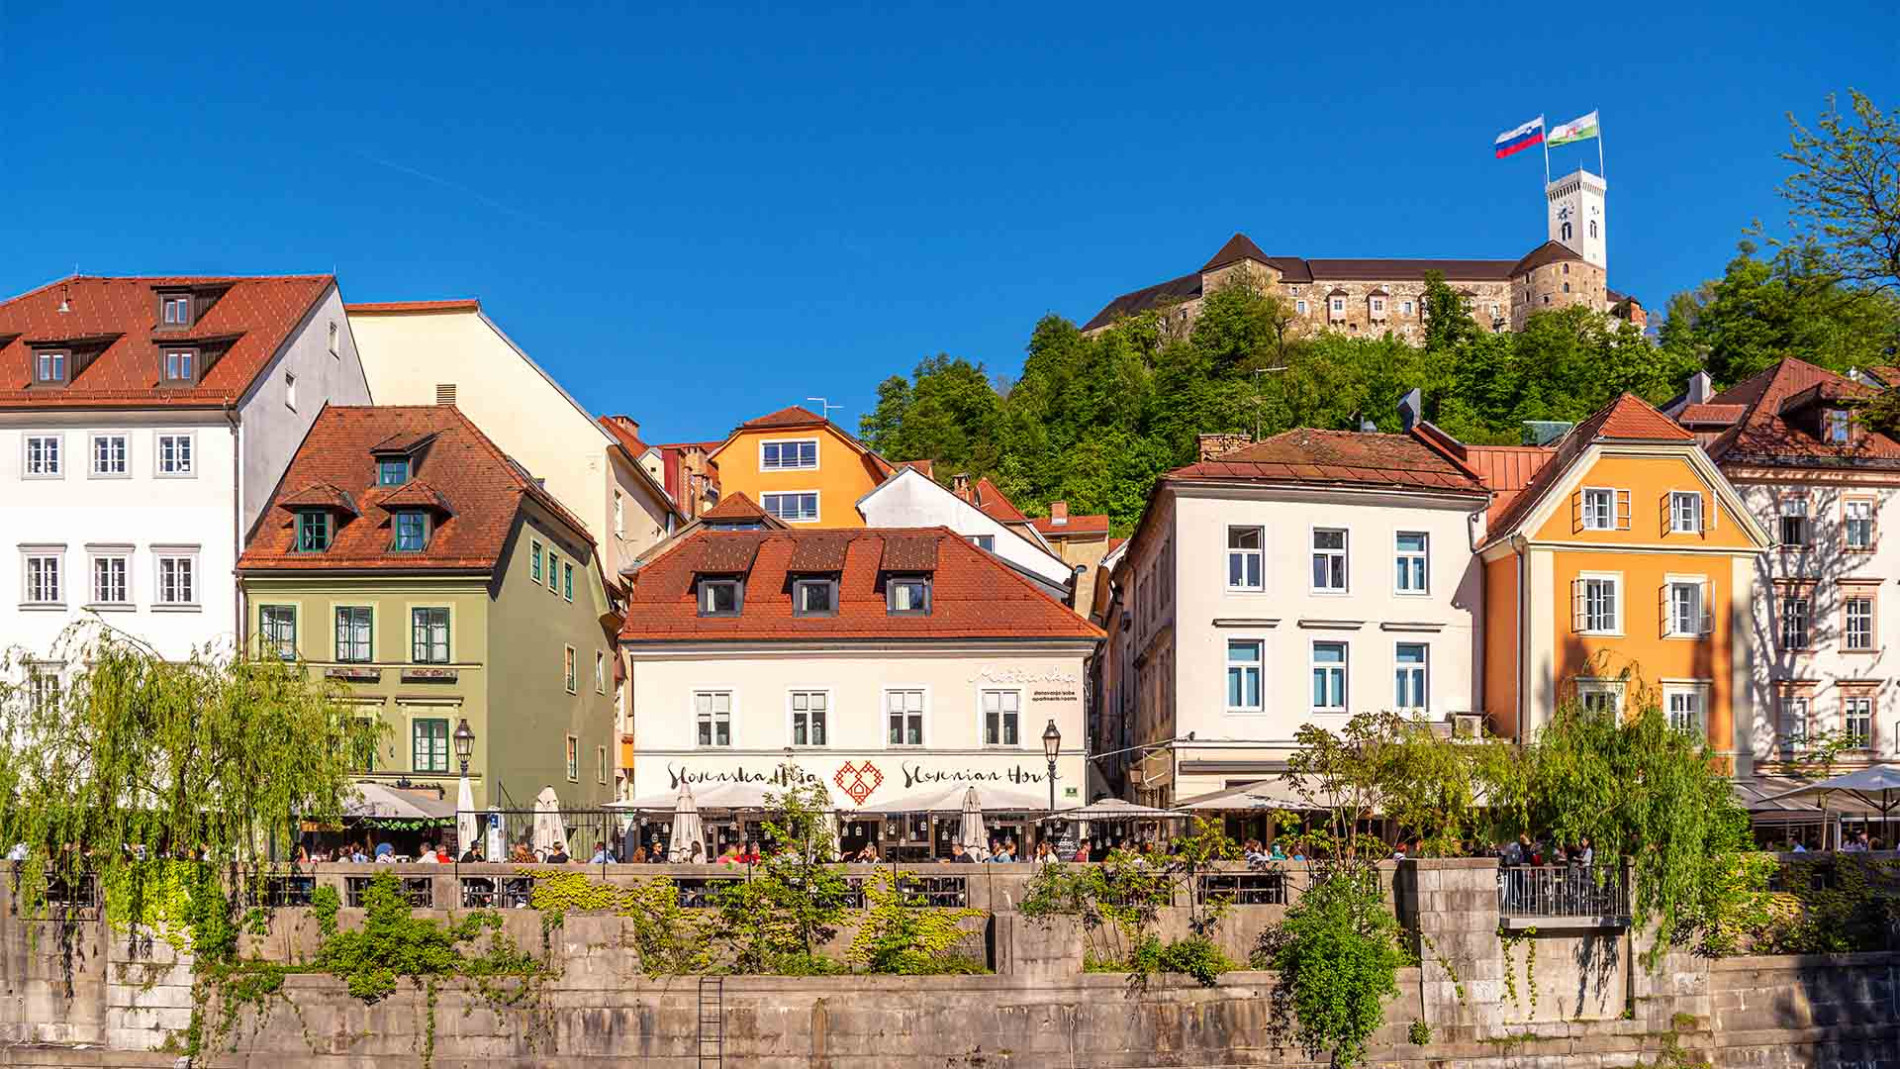 Ljubljanski grad nabrezja 2019 Andrej Tarfila STO 1